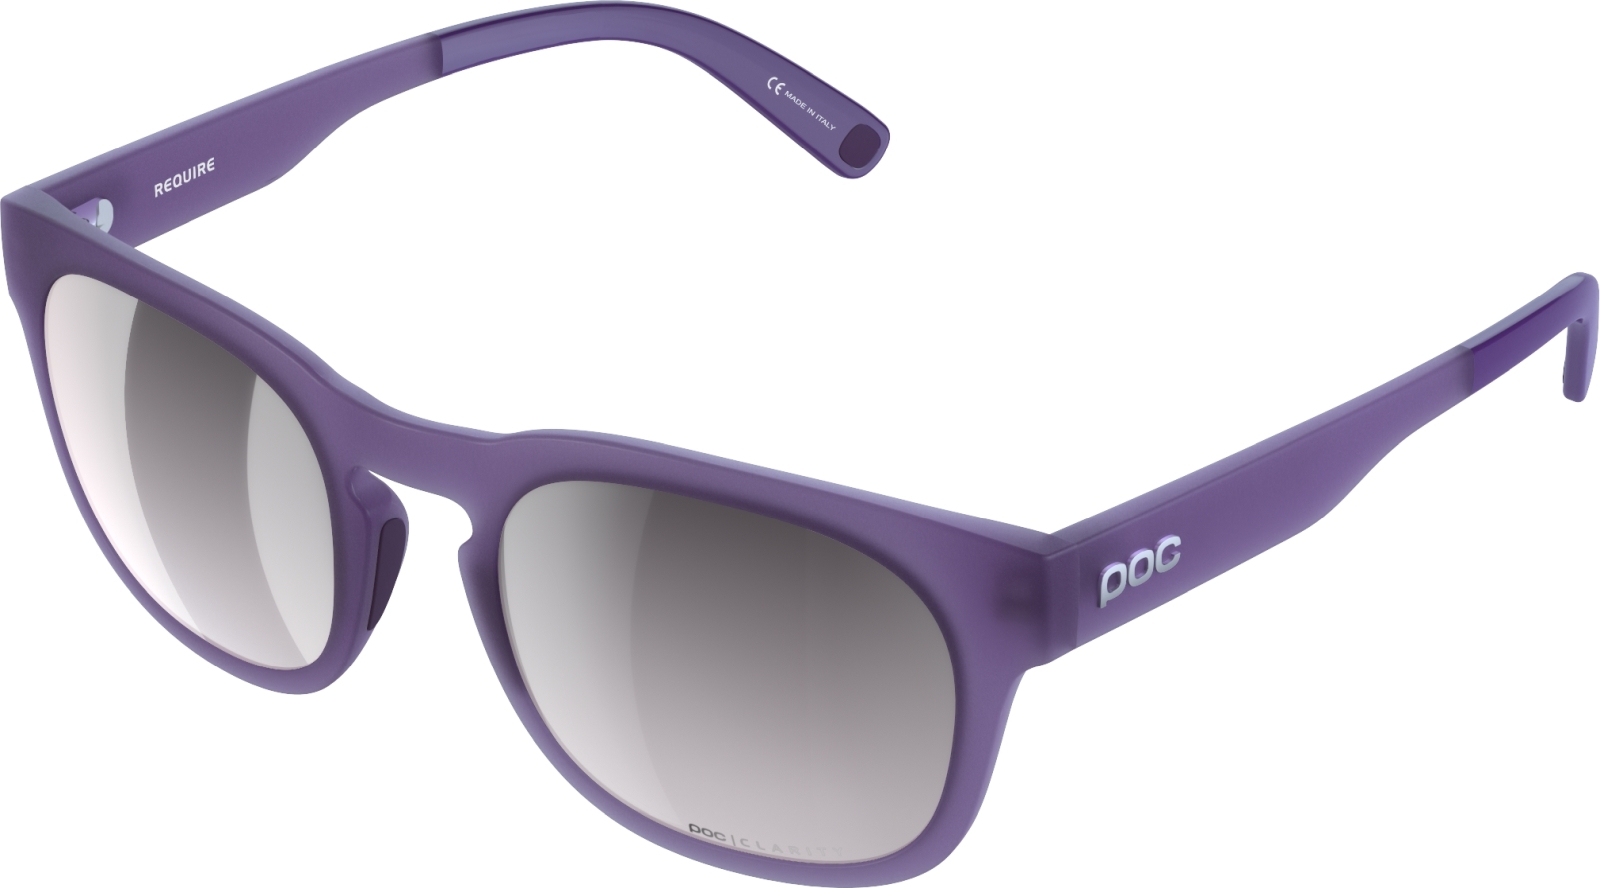 E-shop POC Require - Sapphire Purple Translucent uni